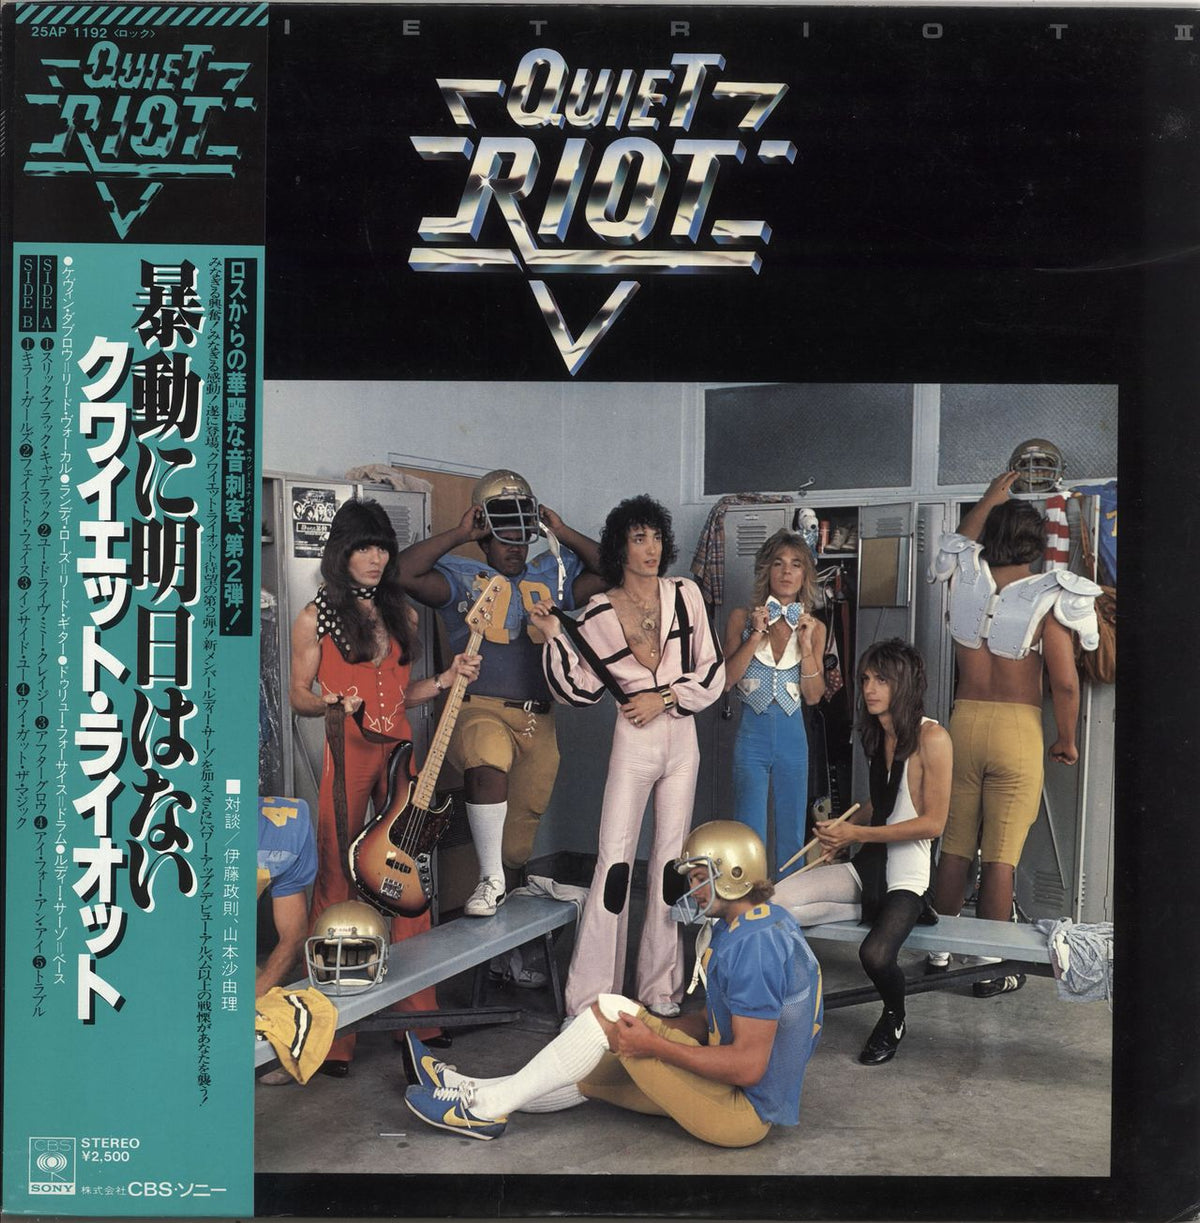 Quiet Riot Quiet Riot II + Obi Japanese Vinyl LP — RareVinyl.com